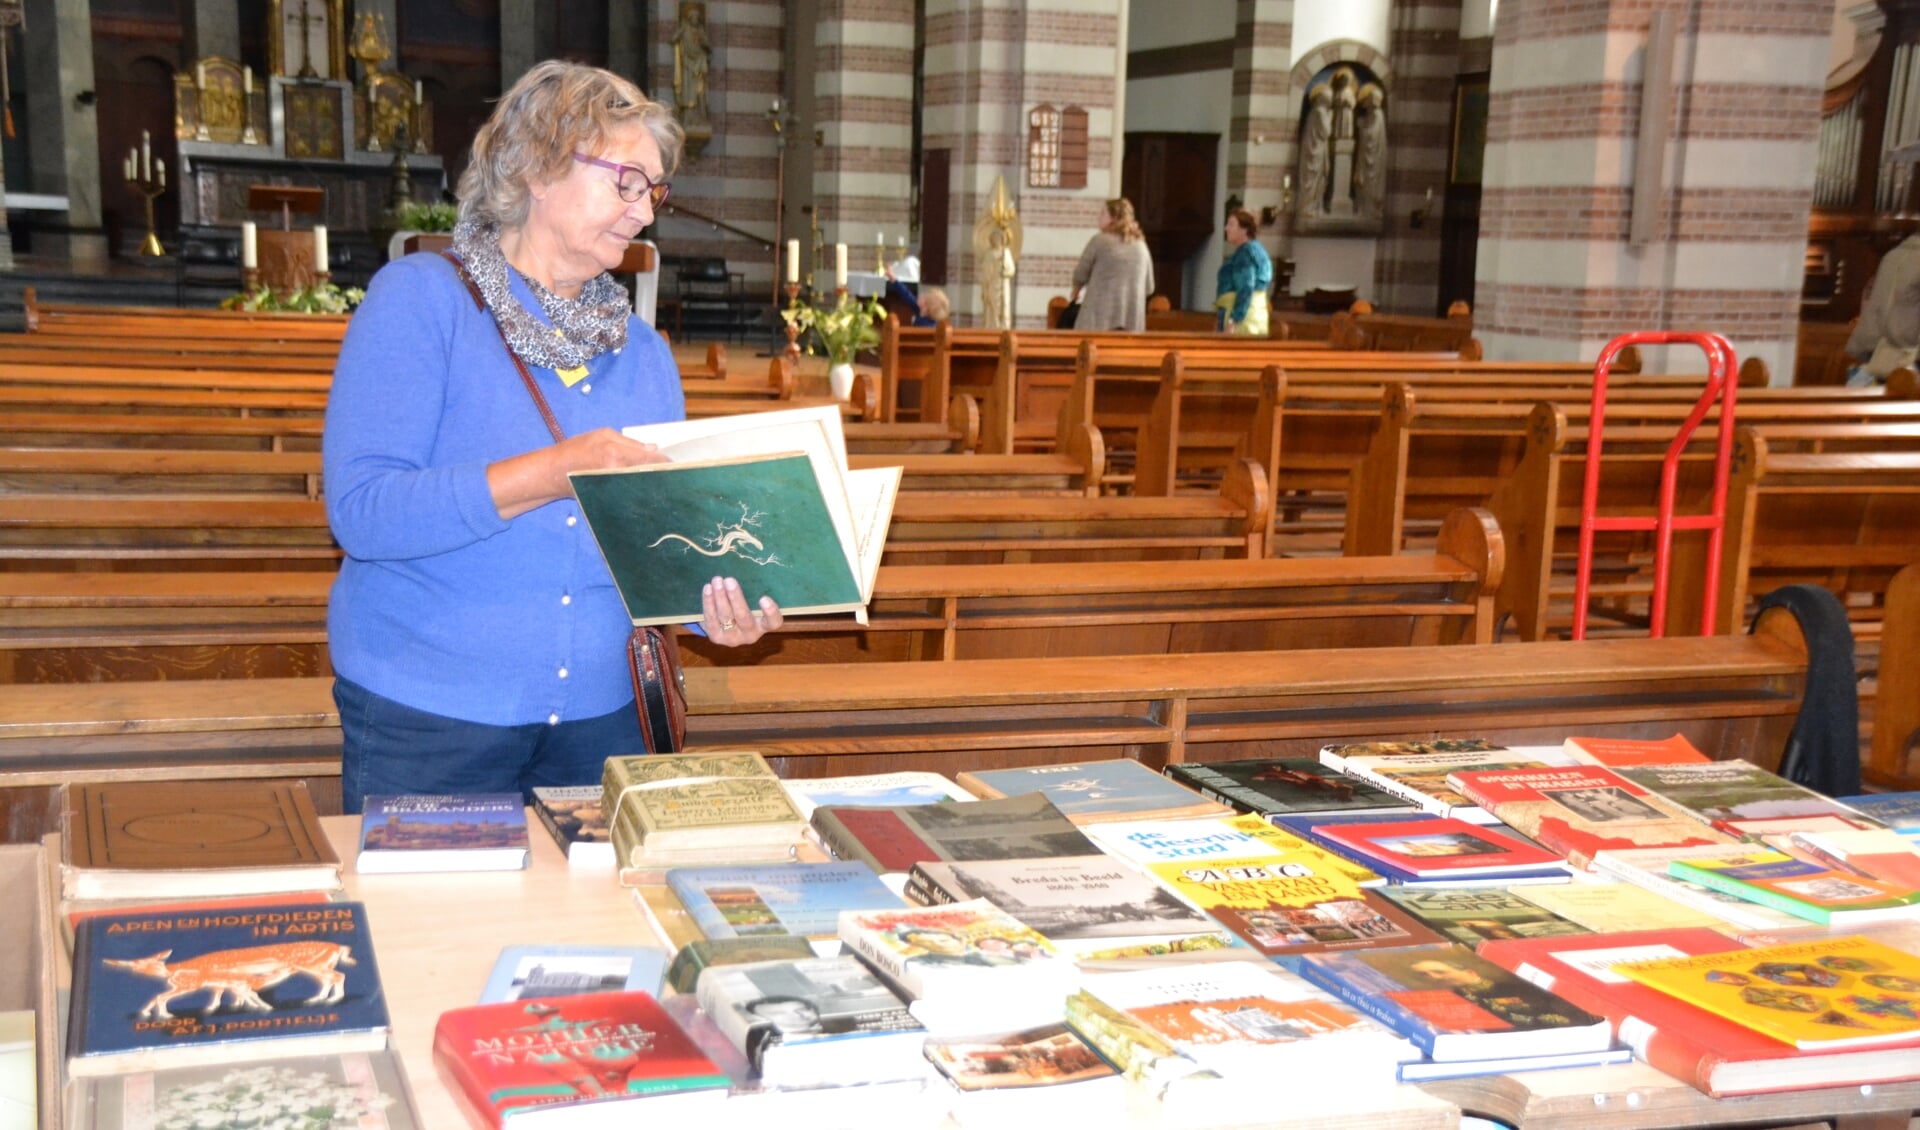 Ook in de Quirinuskerk zelf worden tijdens de snuffelmarkt artikelen aangeboden.